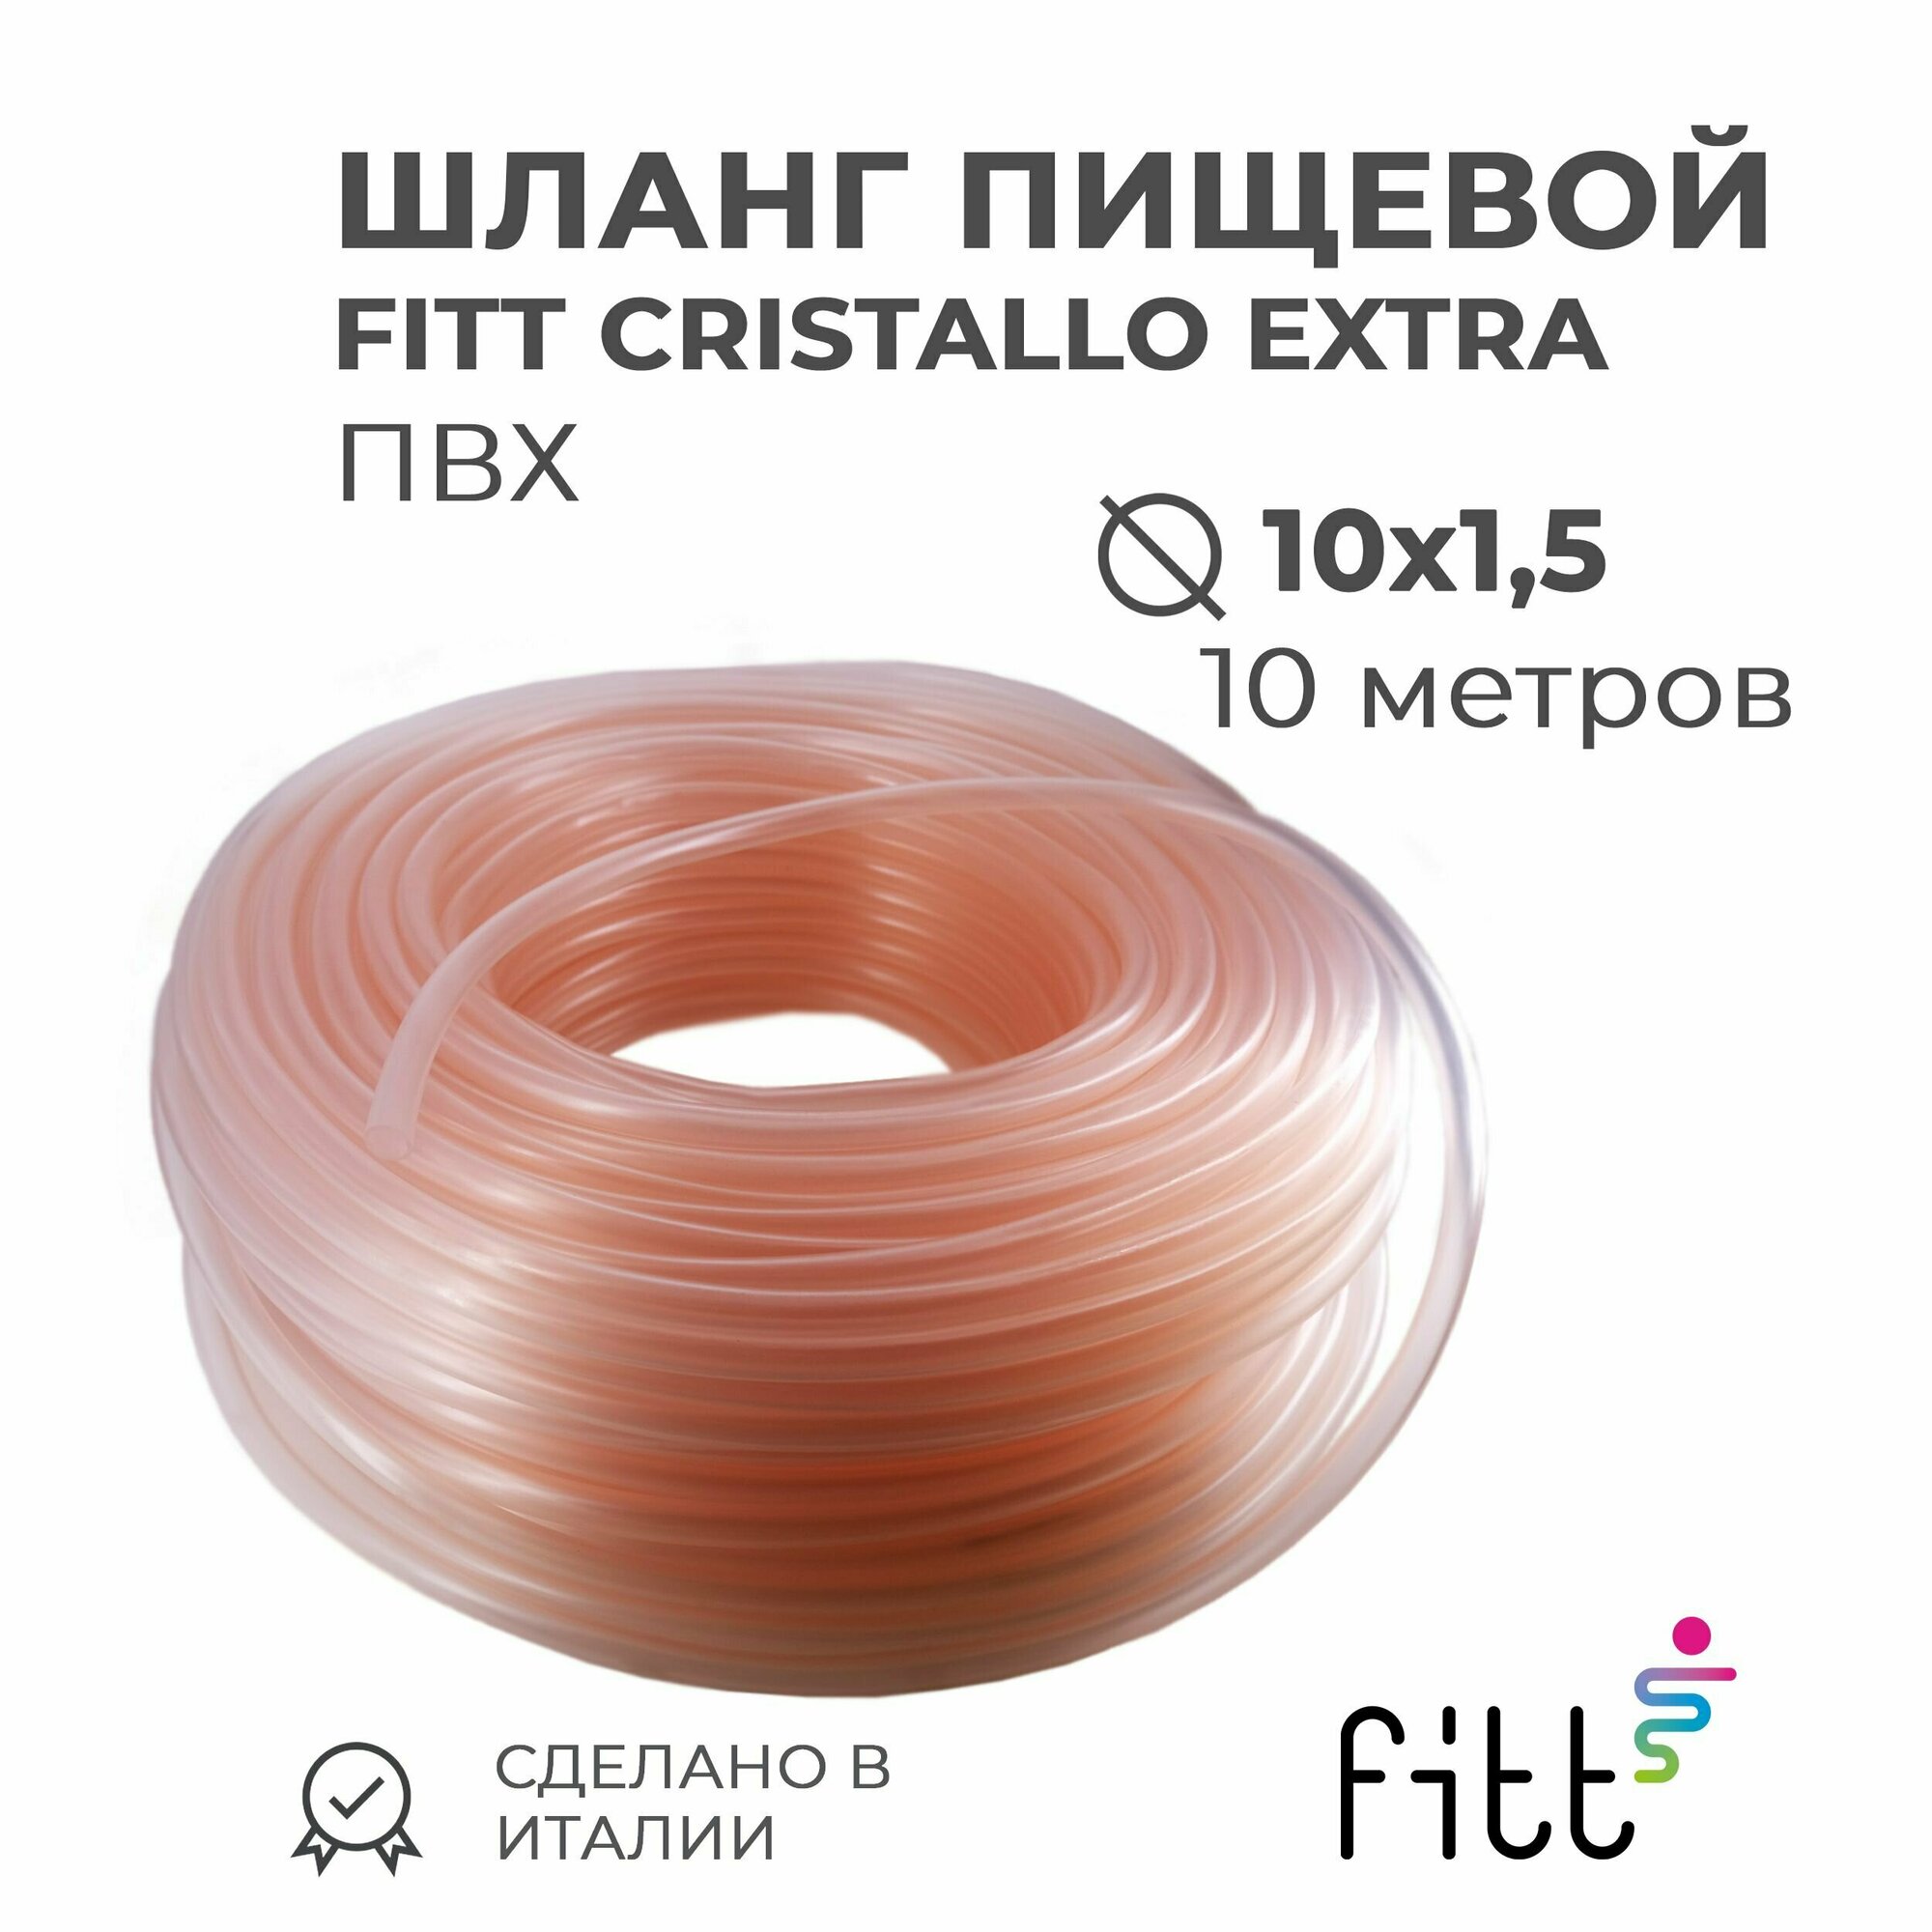 Шланг пищевой 10 х 1,5 мм FITT Cristallo Extra, прозрачный ПВХ (10 метров) - фотография № 1